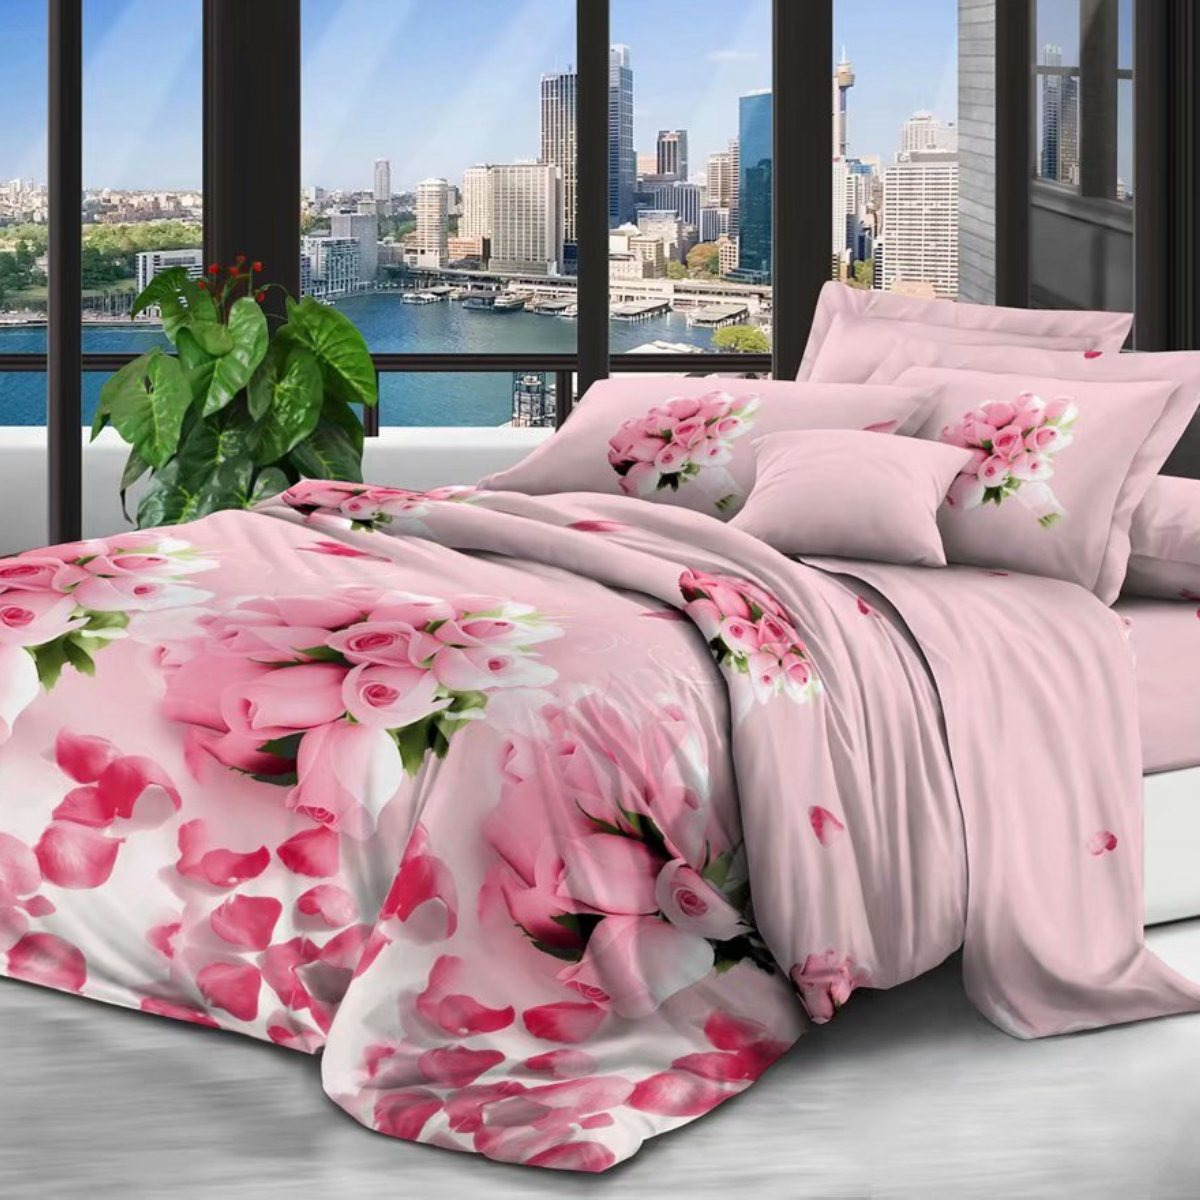 фото Комплект постельного белья Letto, PS191-3, розовый, 1,5-спальный, наволочки 70x70 Letto home textile